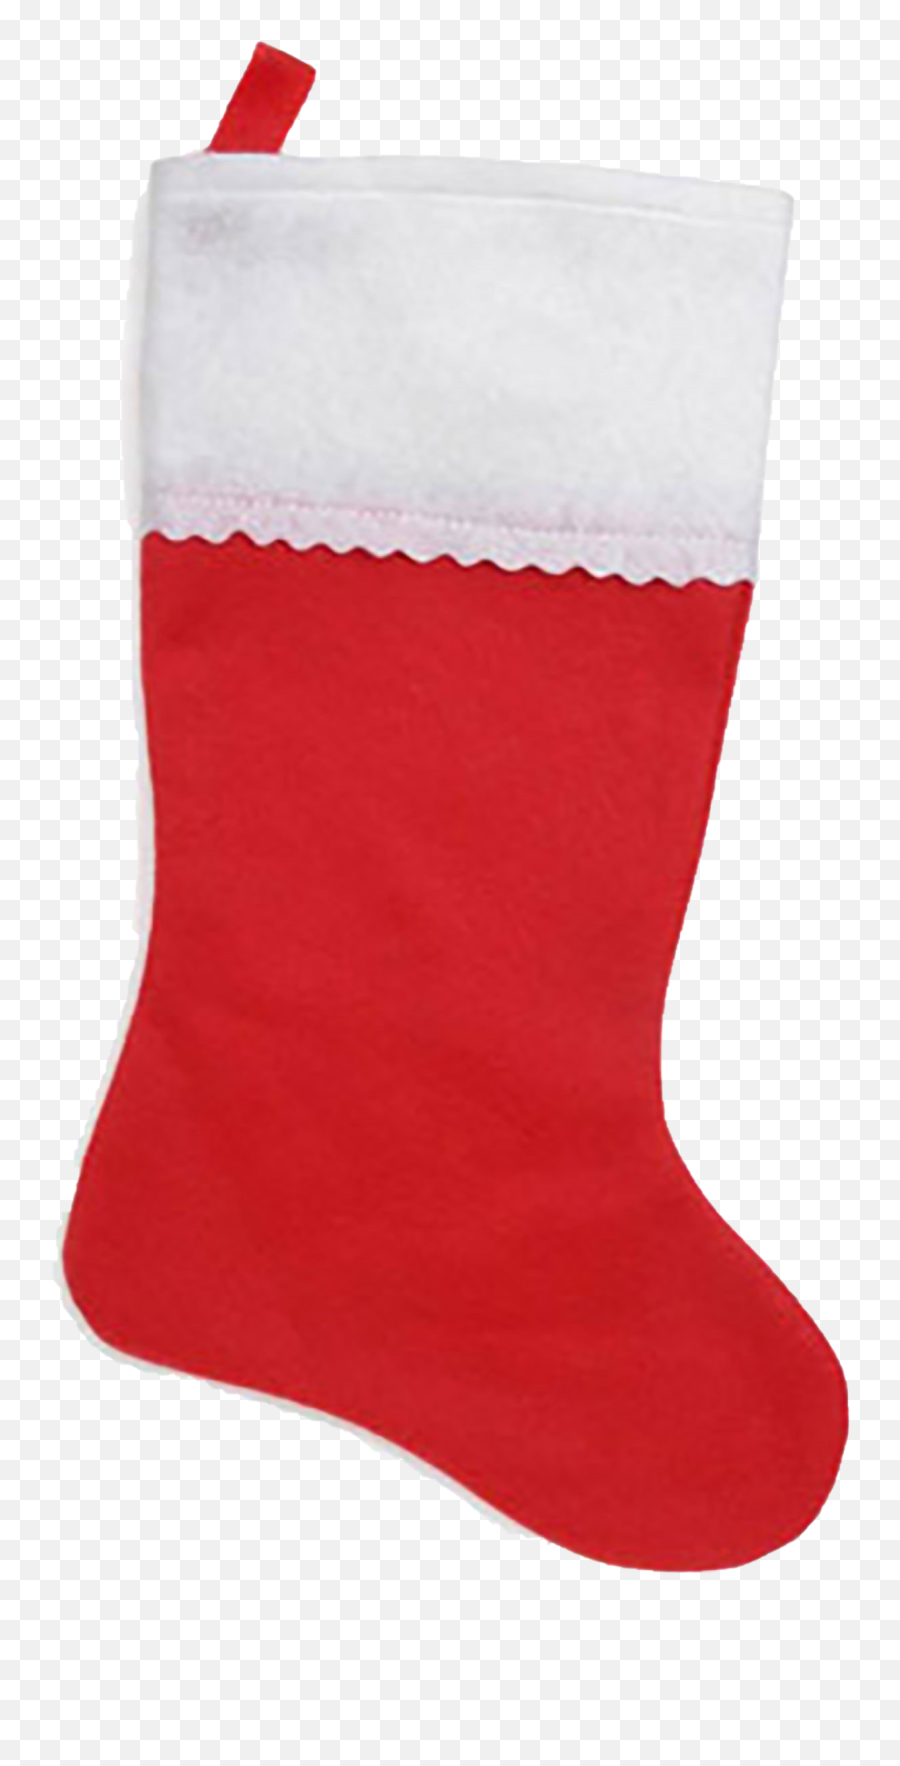 Christmas Stockings Png Image - Christmas Stocking,Christmas Stockings Png